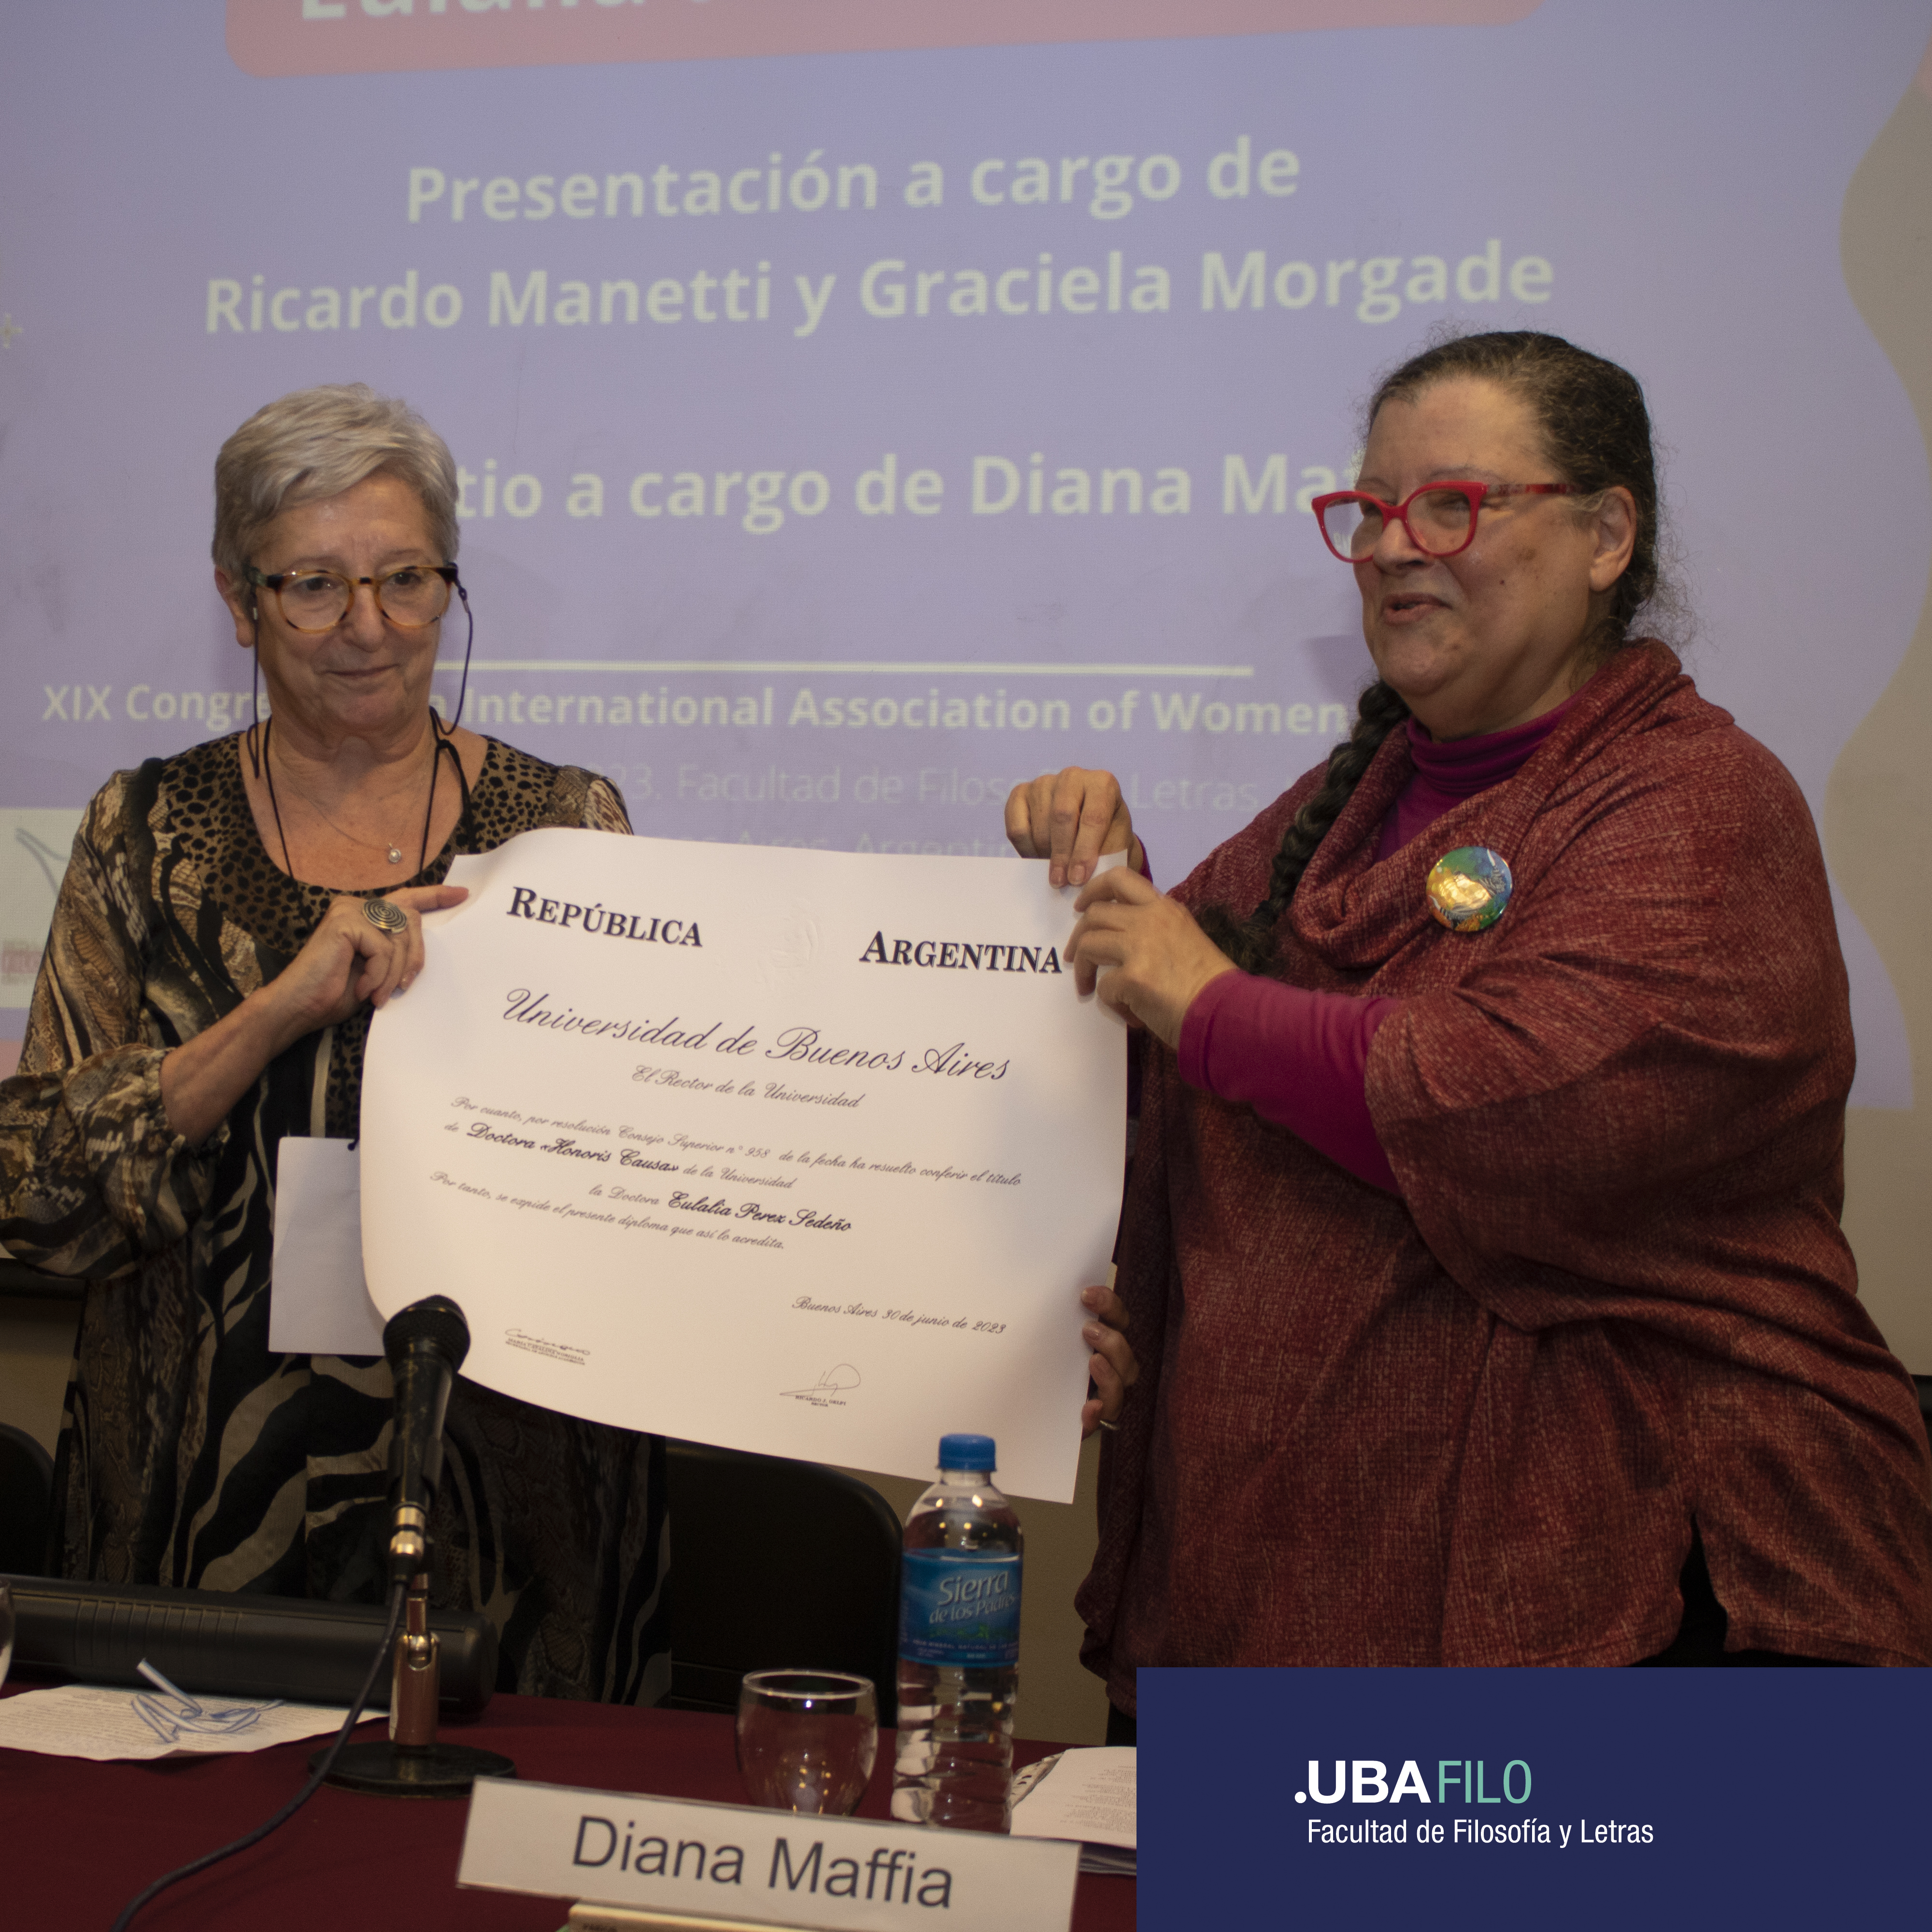 Eulalia Perez Sedeño y Diana Maffía sostienen el diploma de Honoris Causa